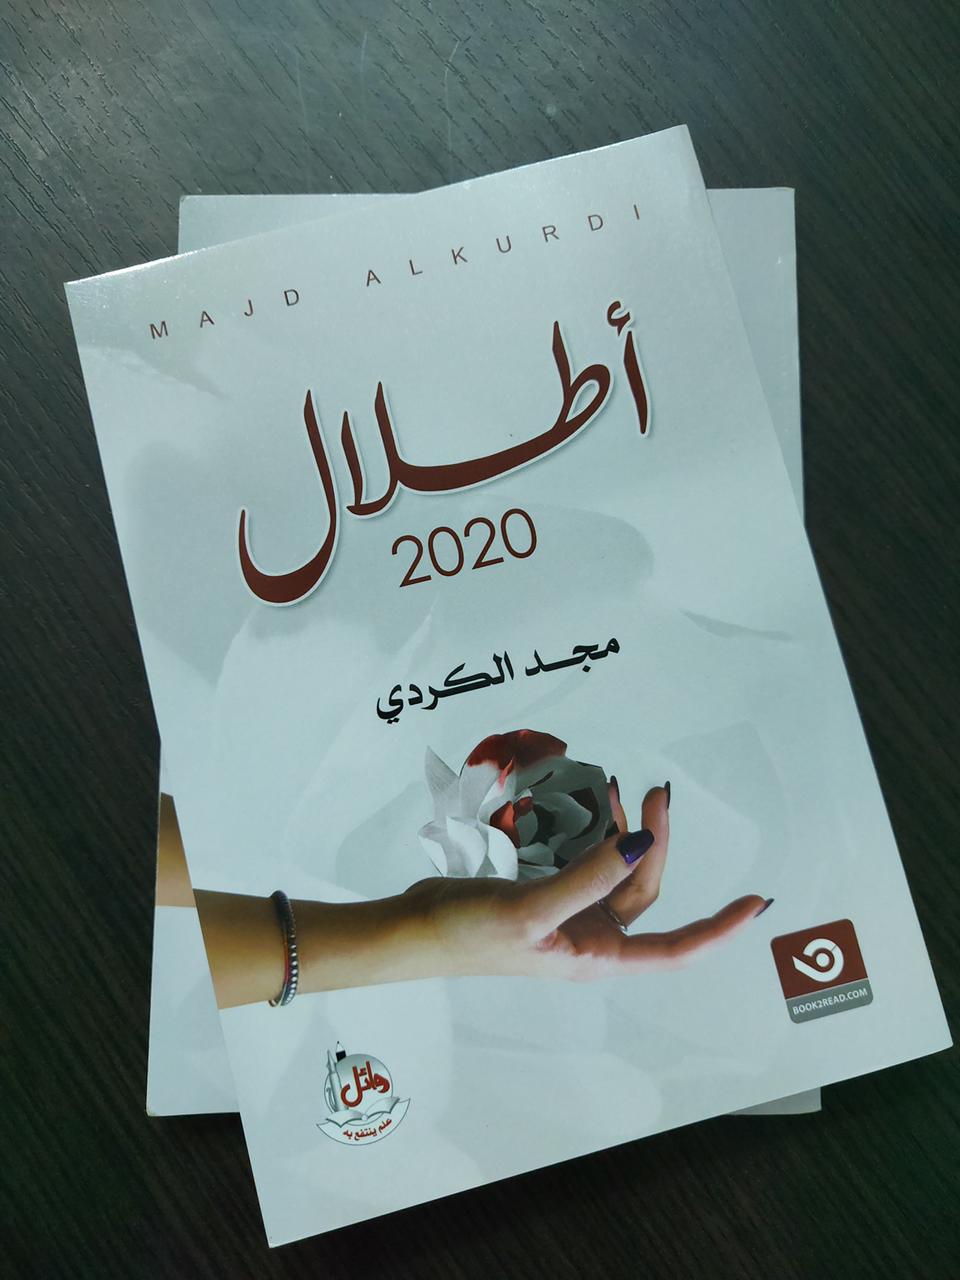 قدرات للتنمية المجتمعية تقيم حفل إشهار كتاب "أطلال٢٠٢٠" للكاتبة الصاعدة "مجد الكردي"